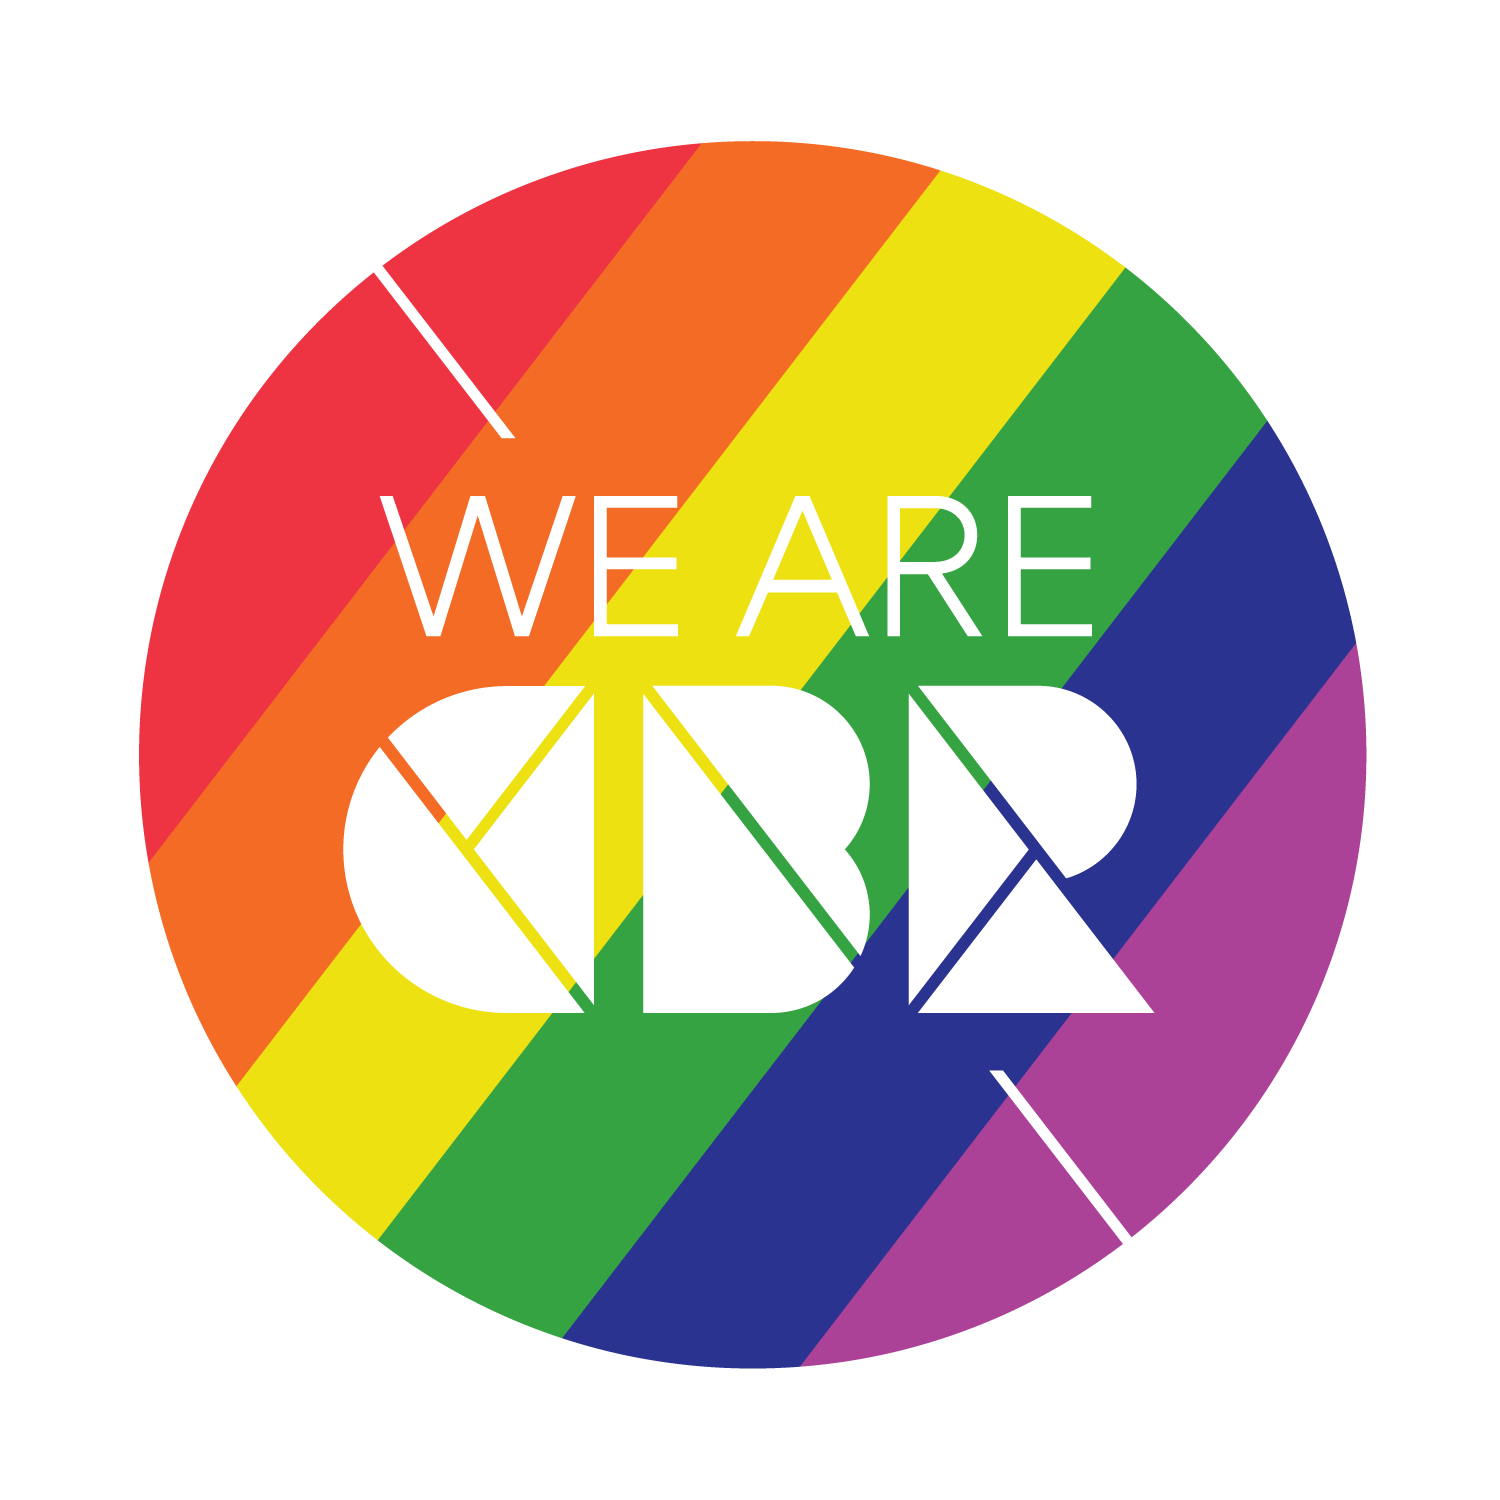 We are cbr pride badge